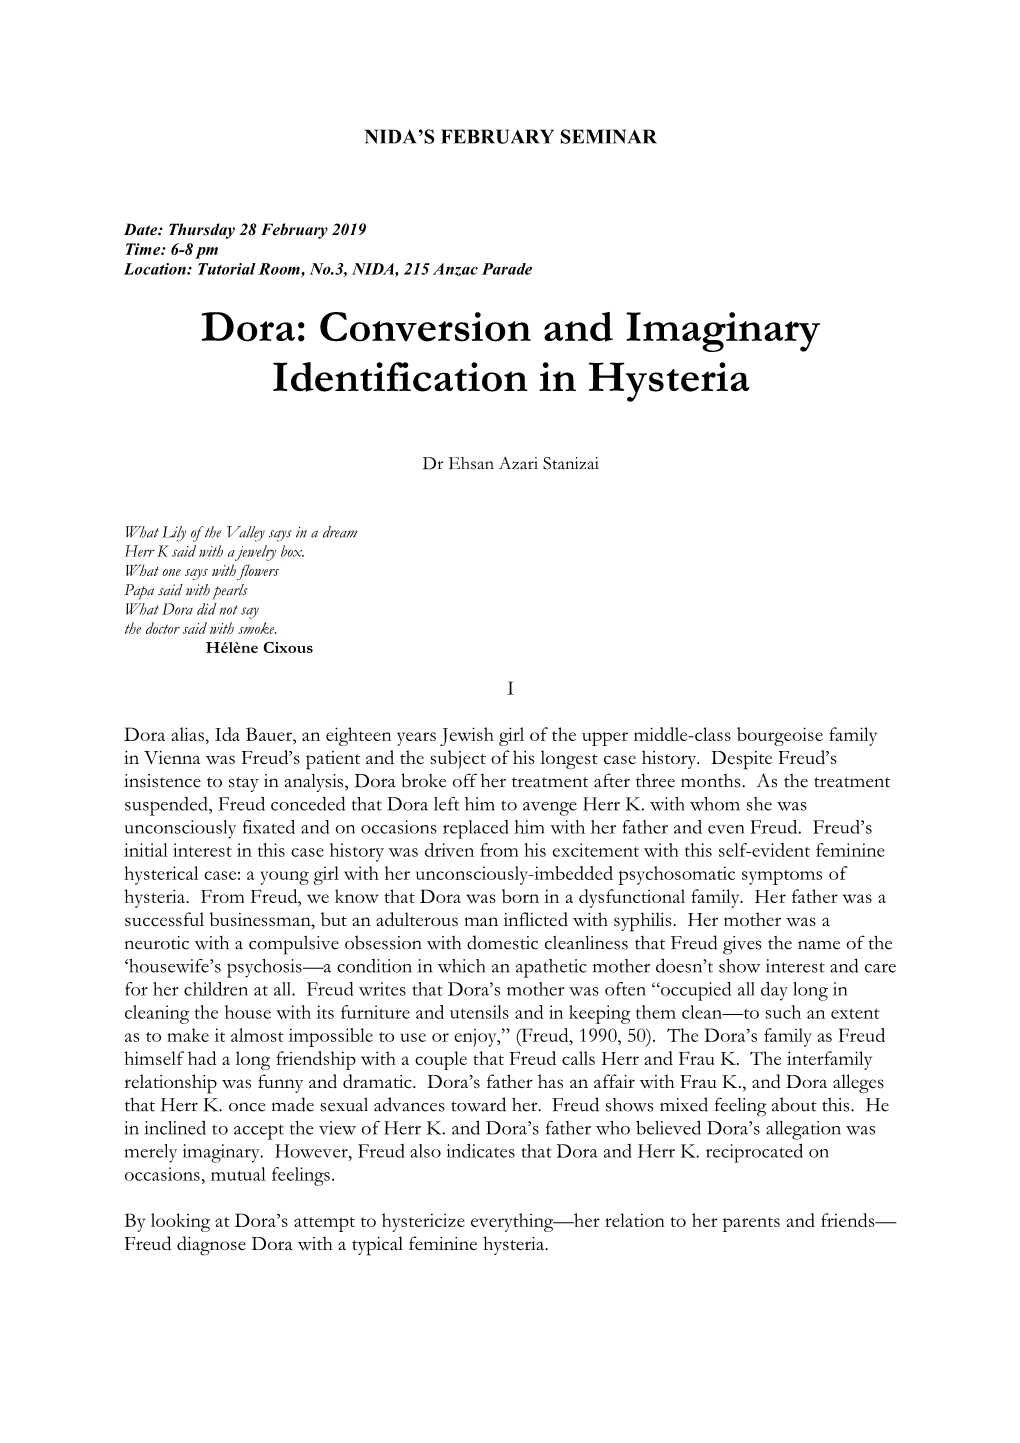 Dora: Conversion and Imaginary Identification in Hysteria